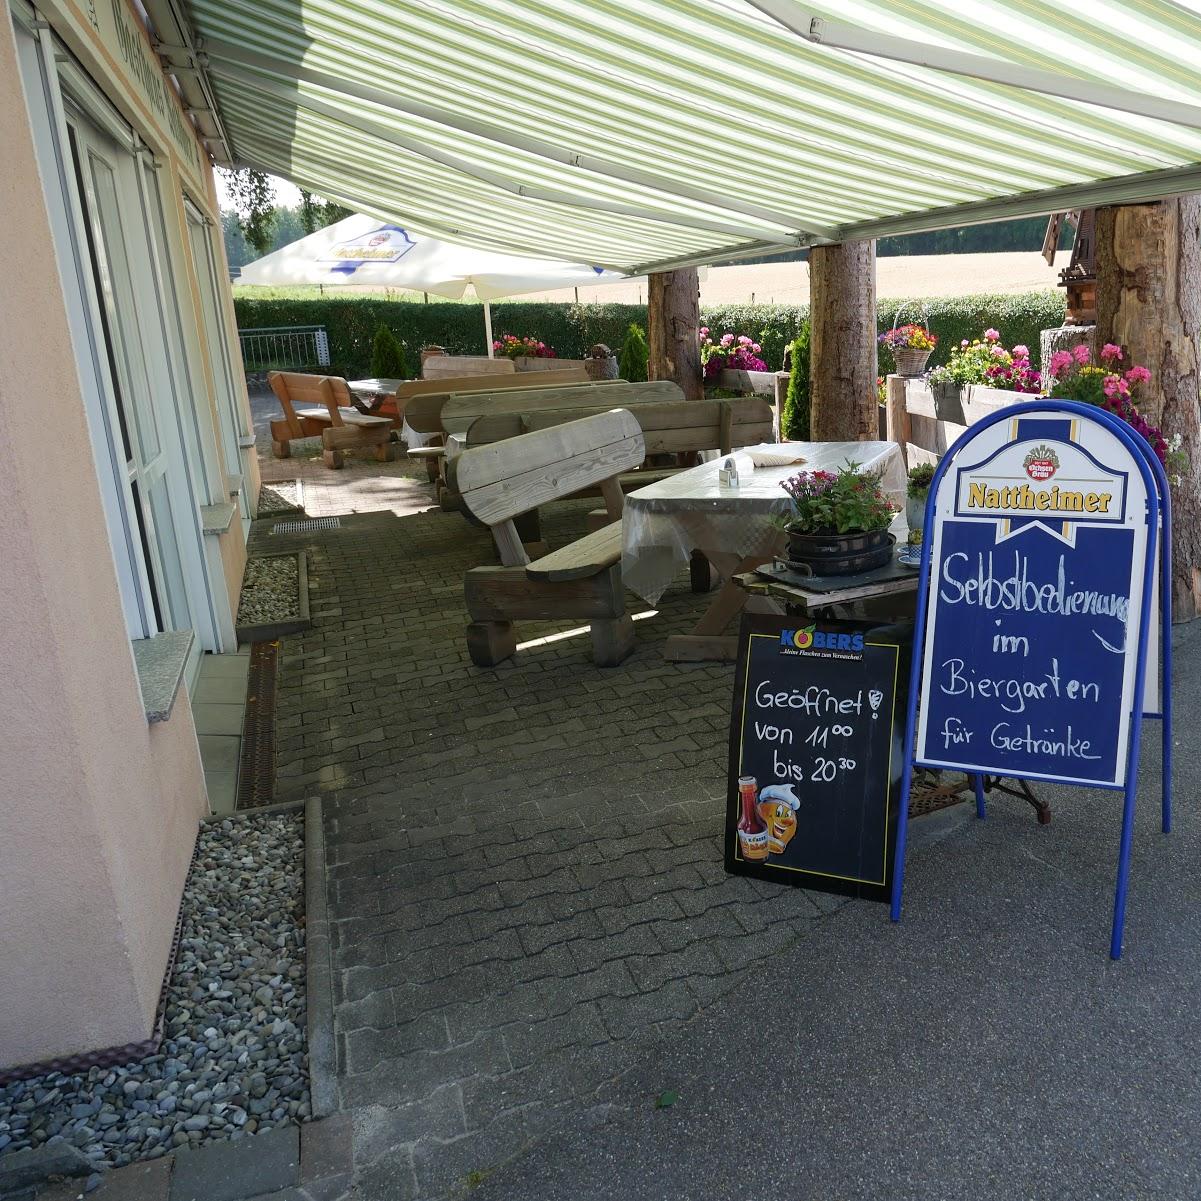 Restaurant "Gasthof Waldhorn" in Heidenheim an der Brenz